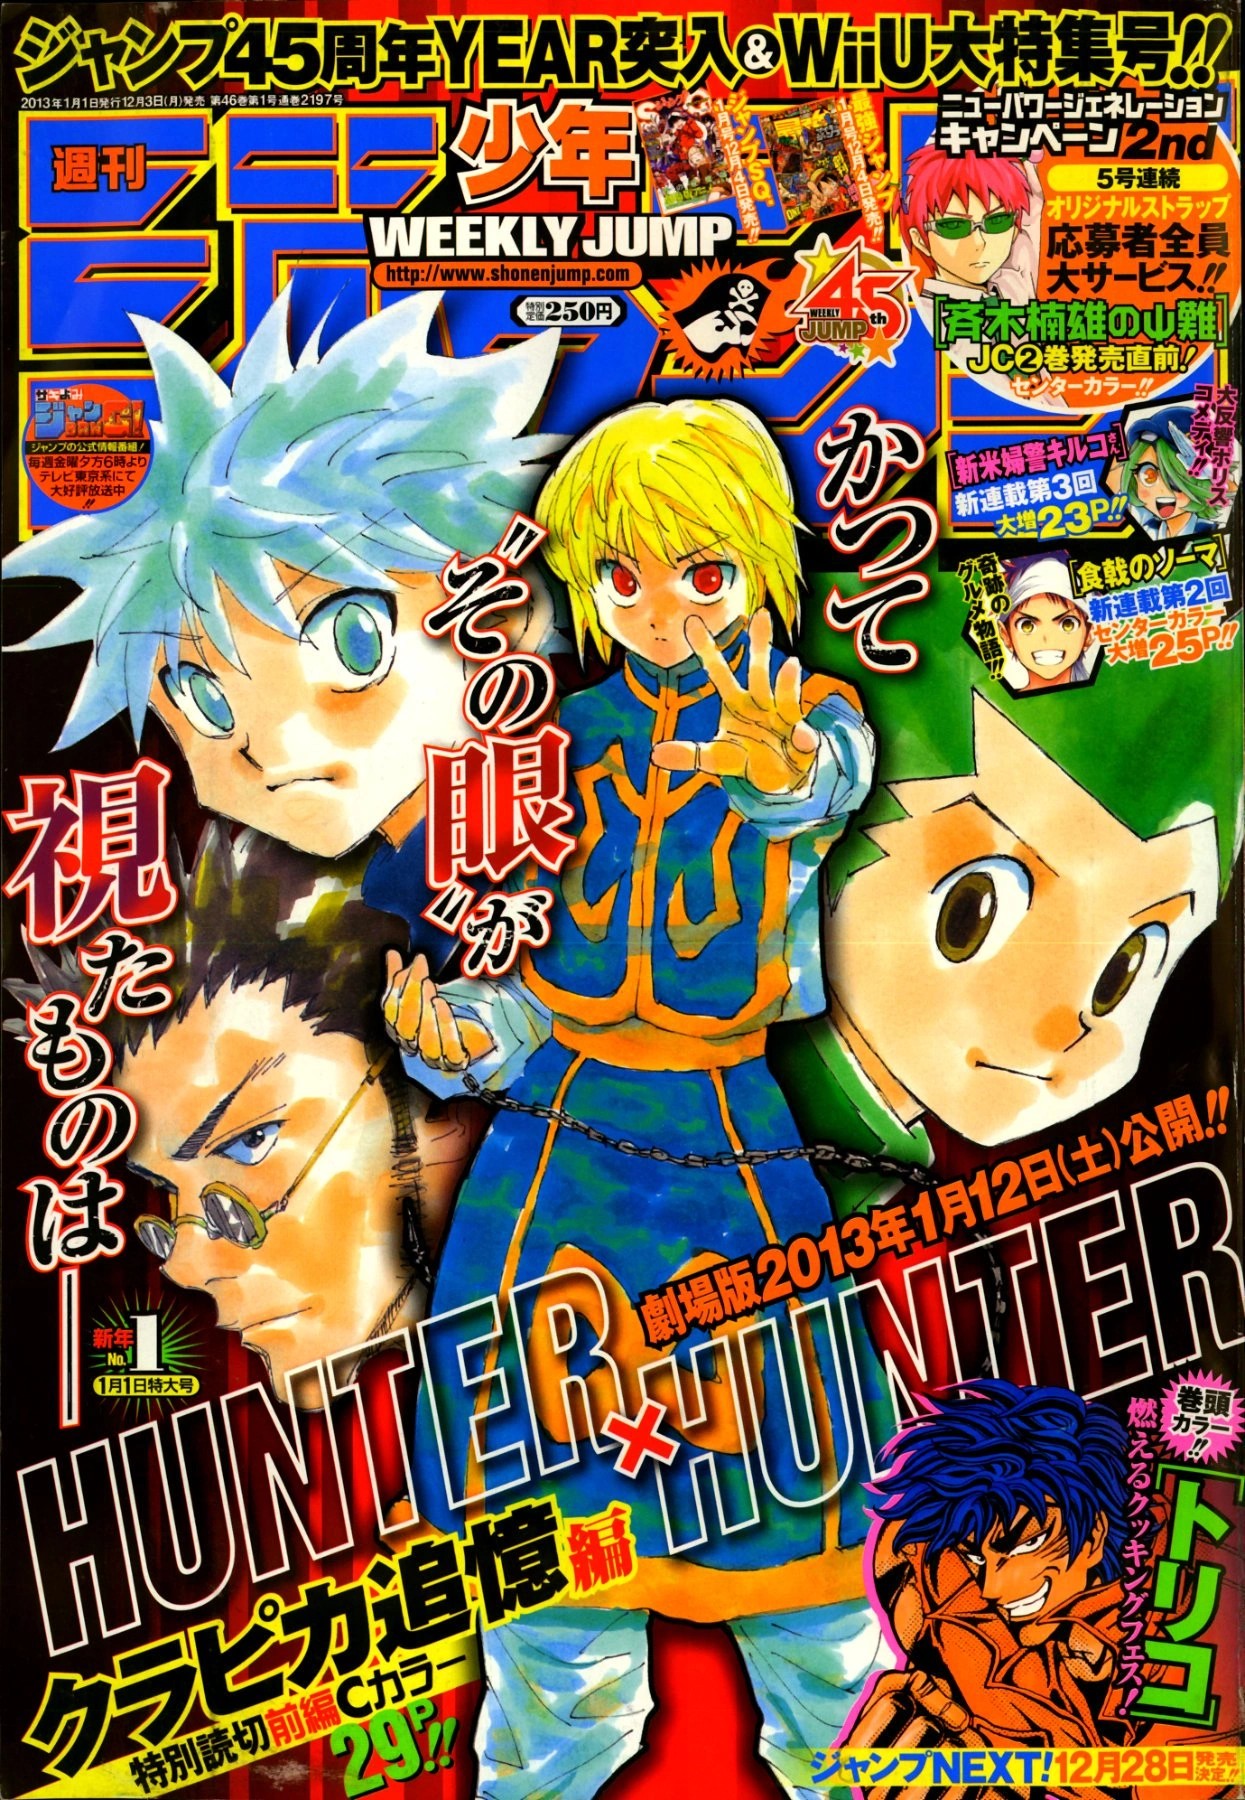 Hunter X Hunter: Memories x and x Milestones 9/20/14 - Episode 71